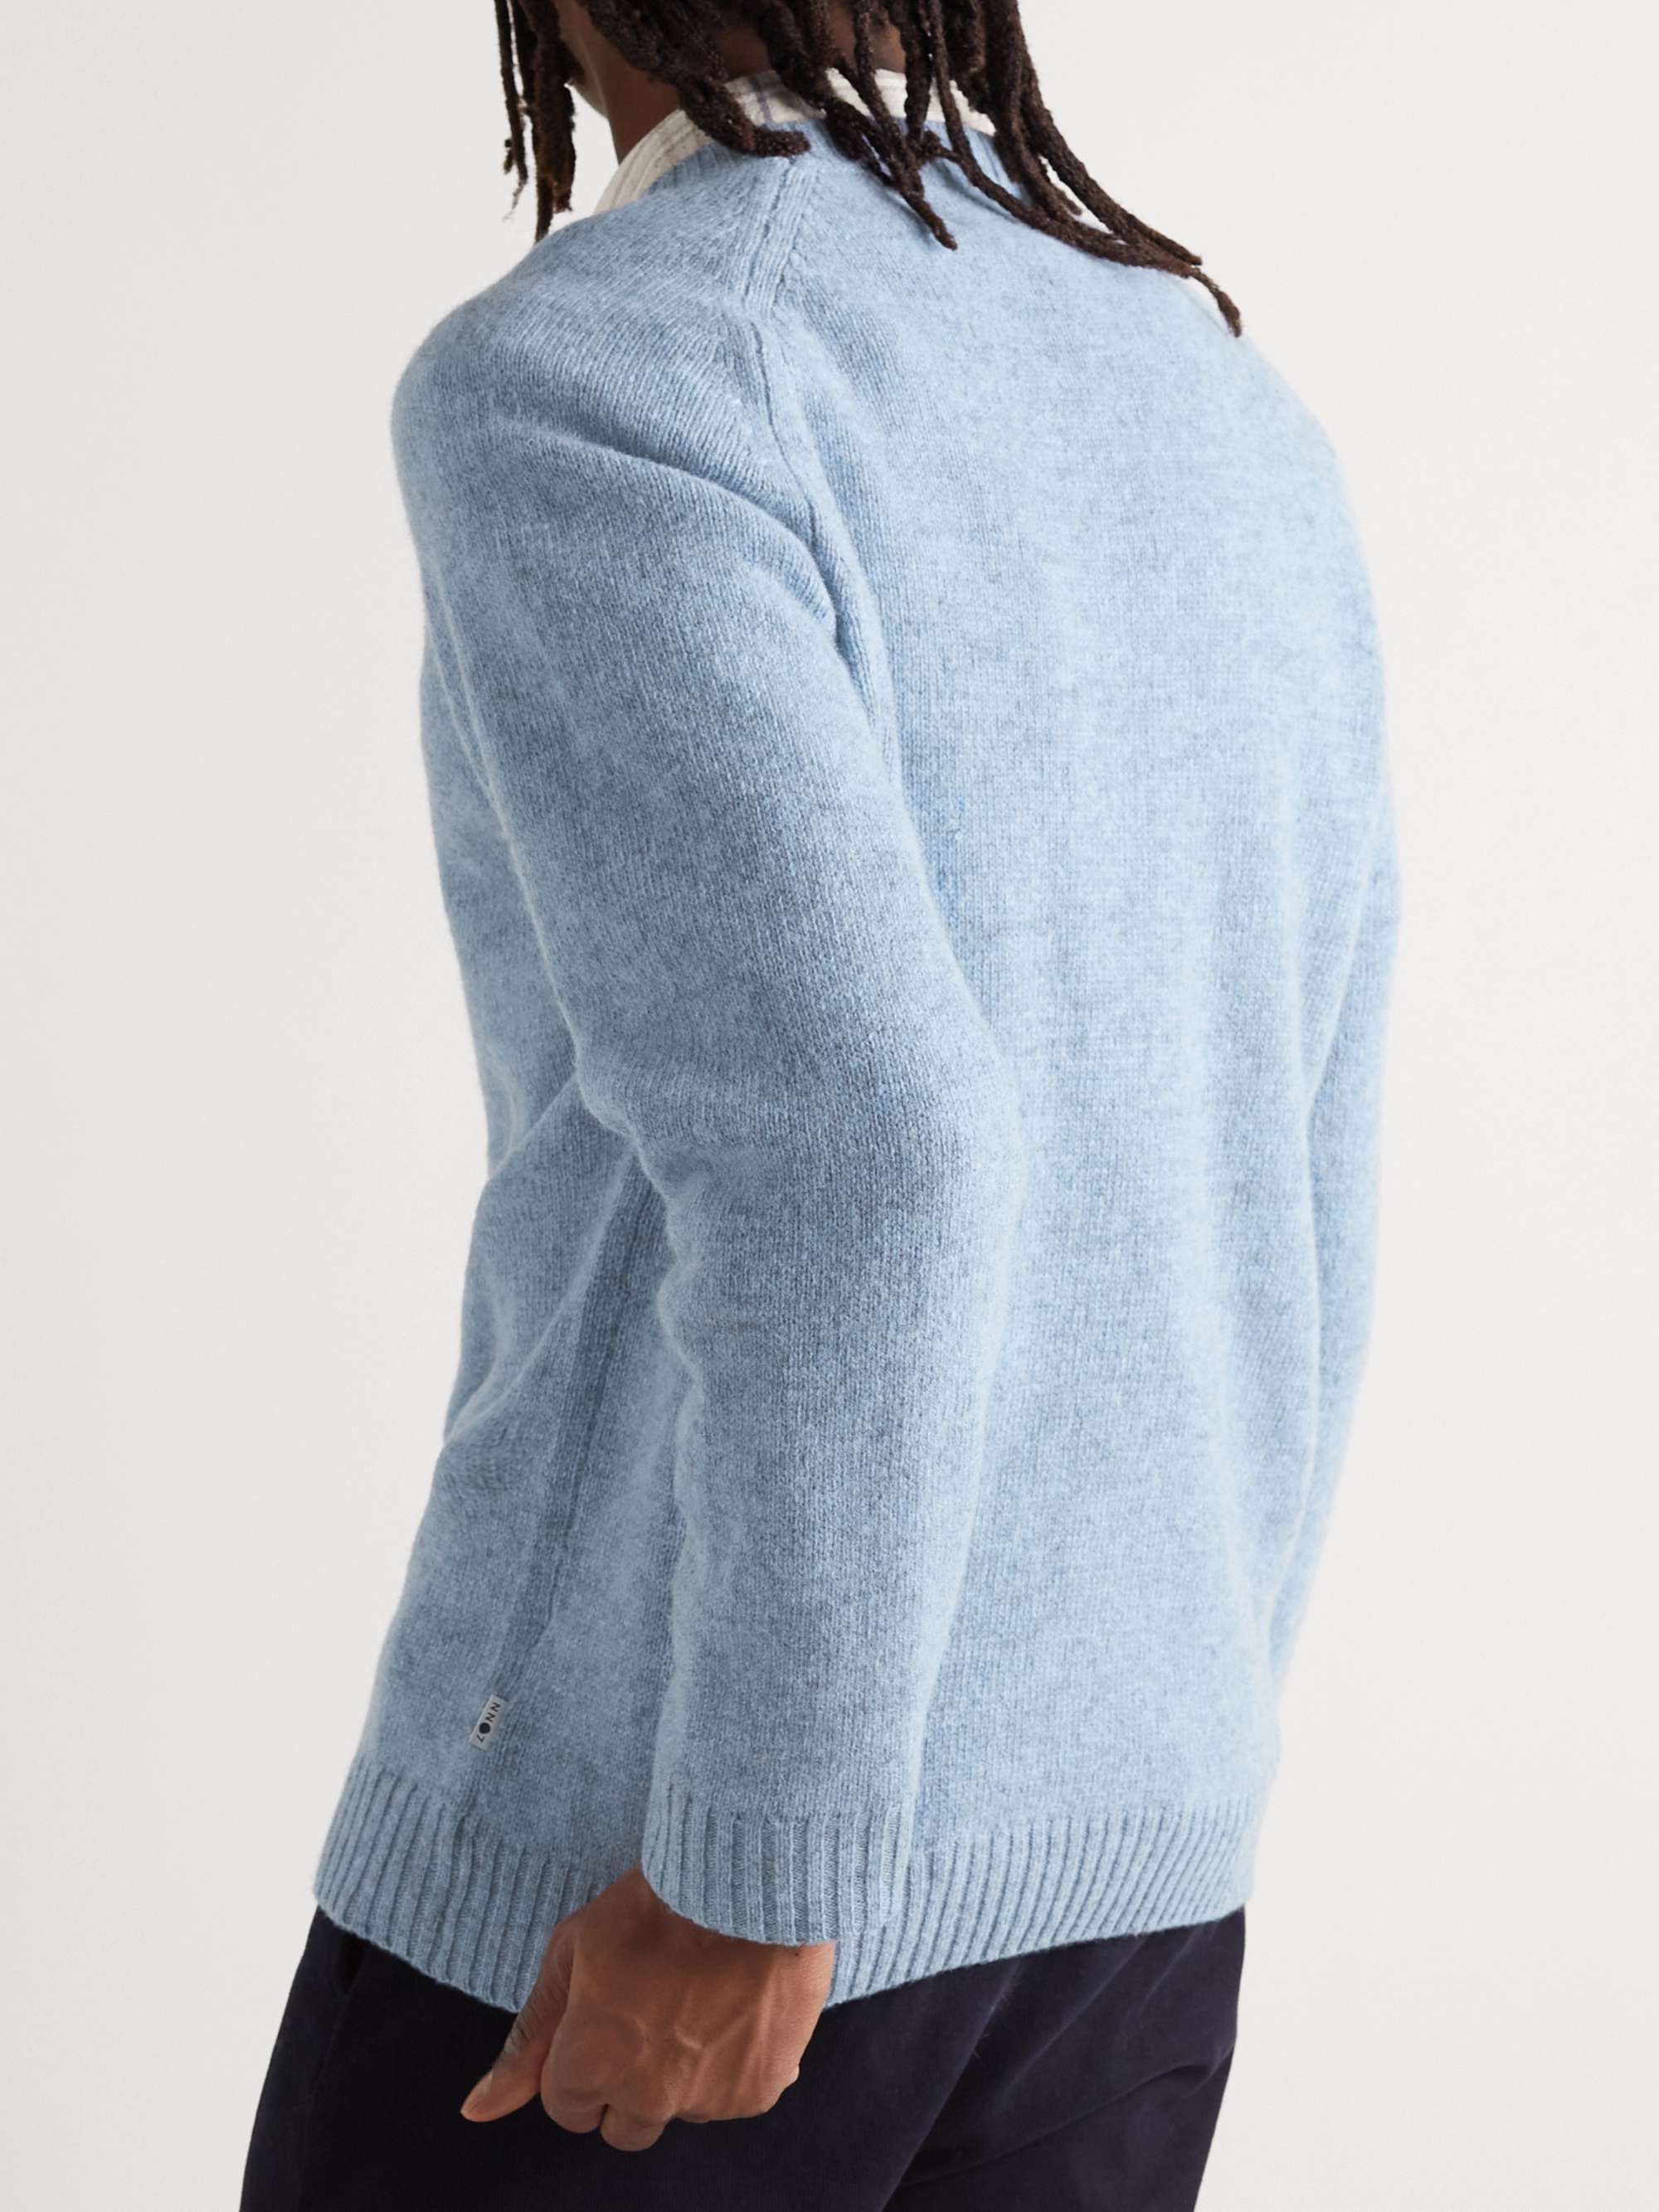 NN07 Nathan Wool Sweater for Men | MR PORTER